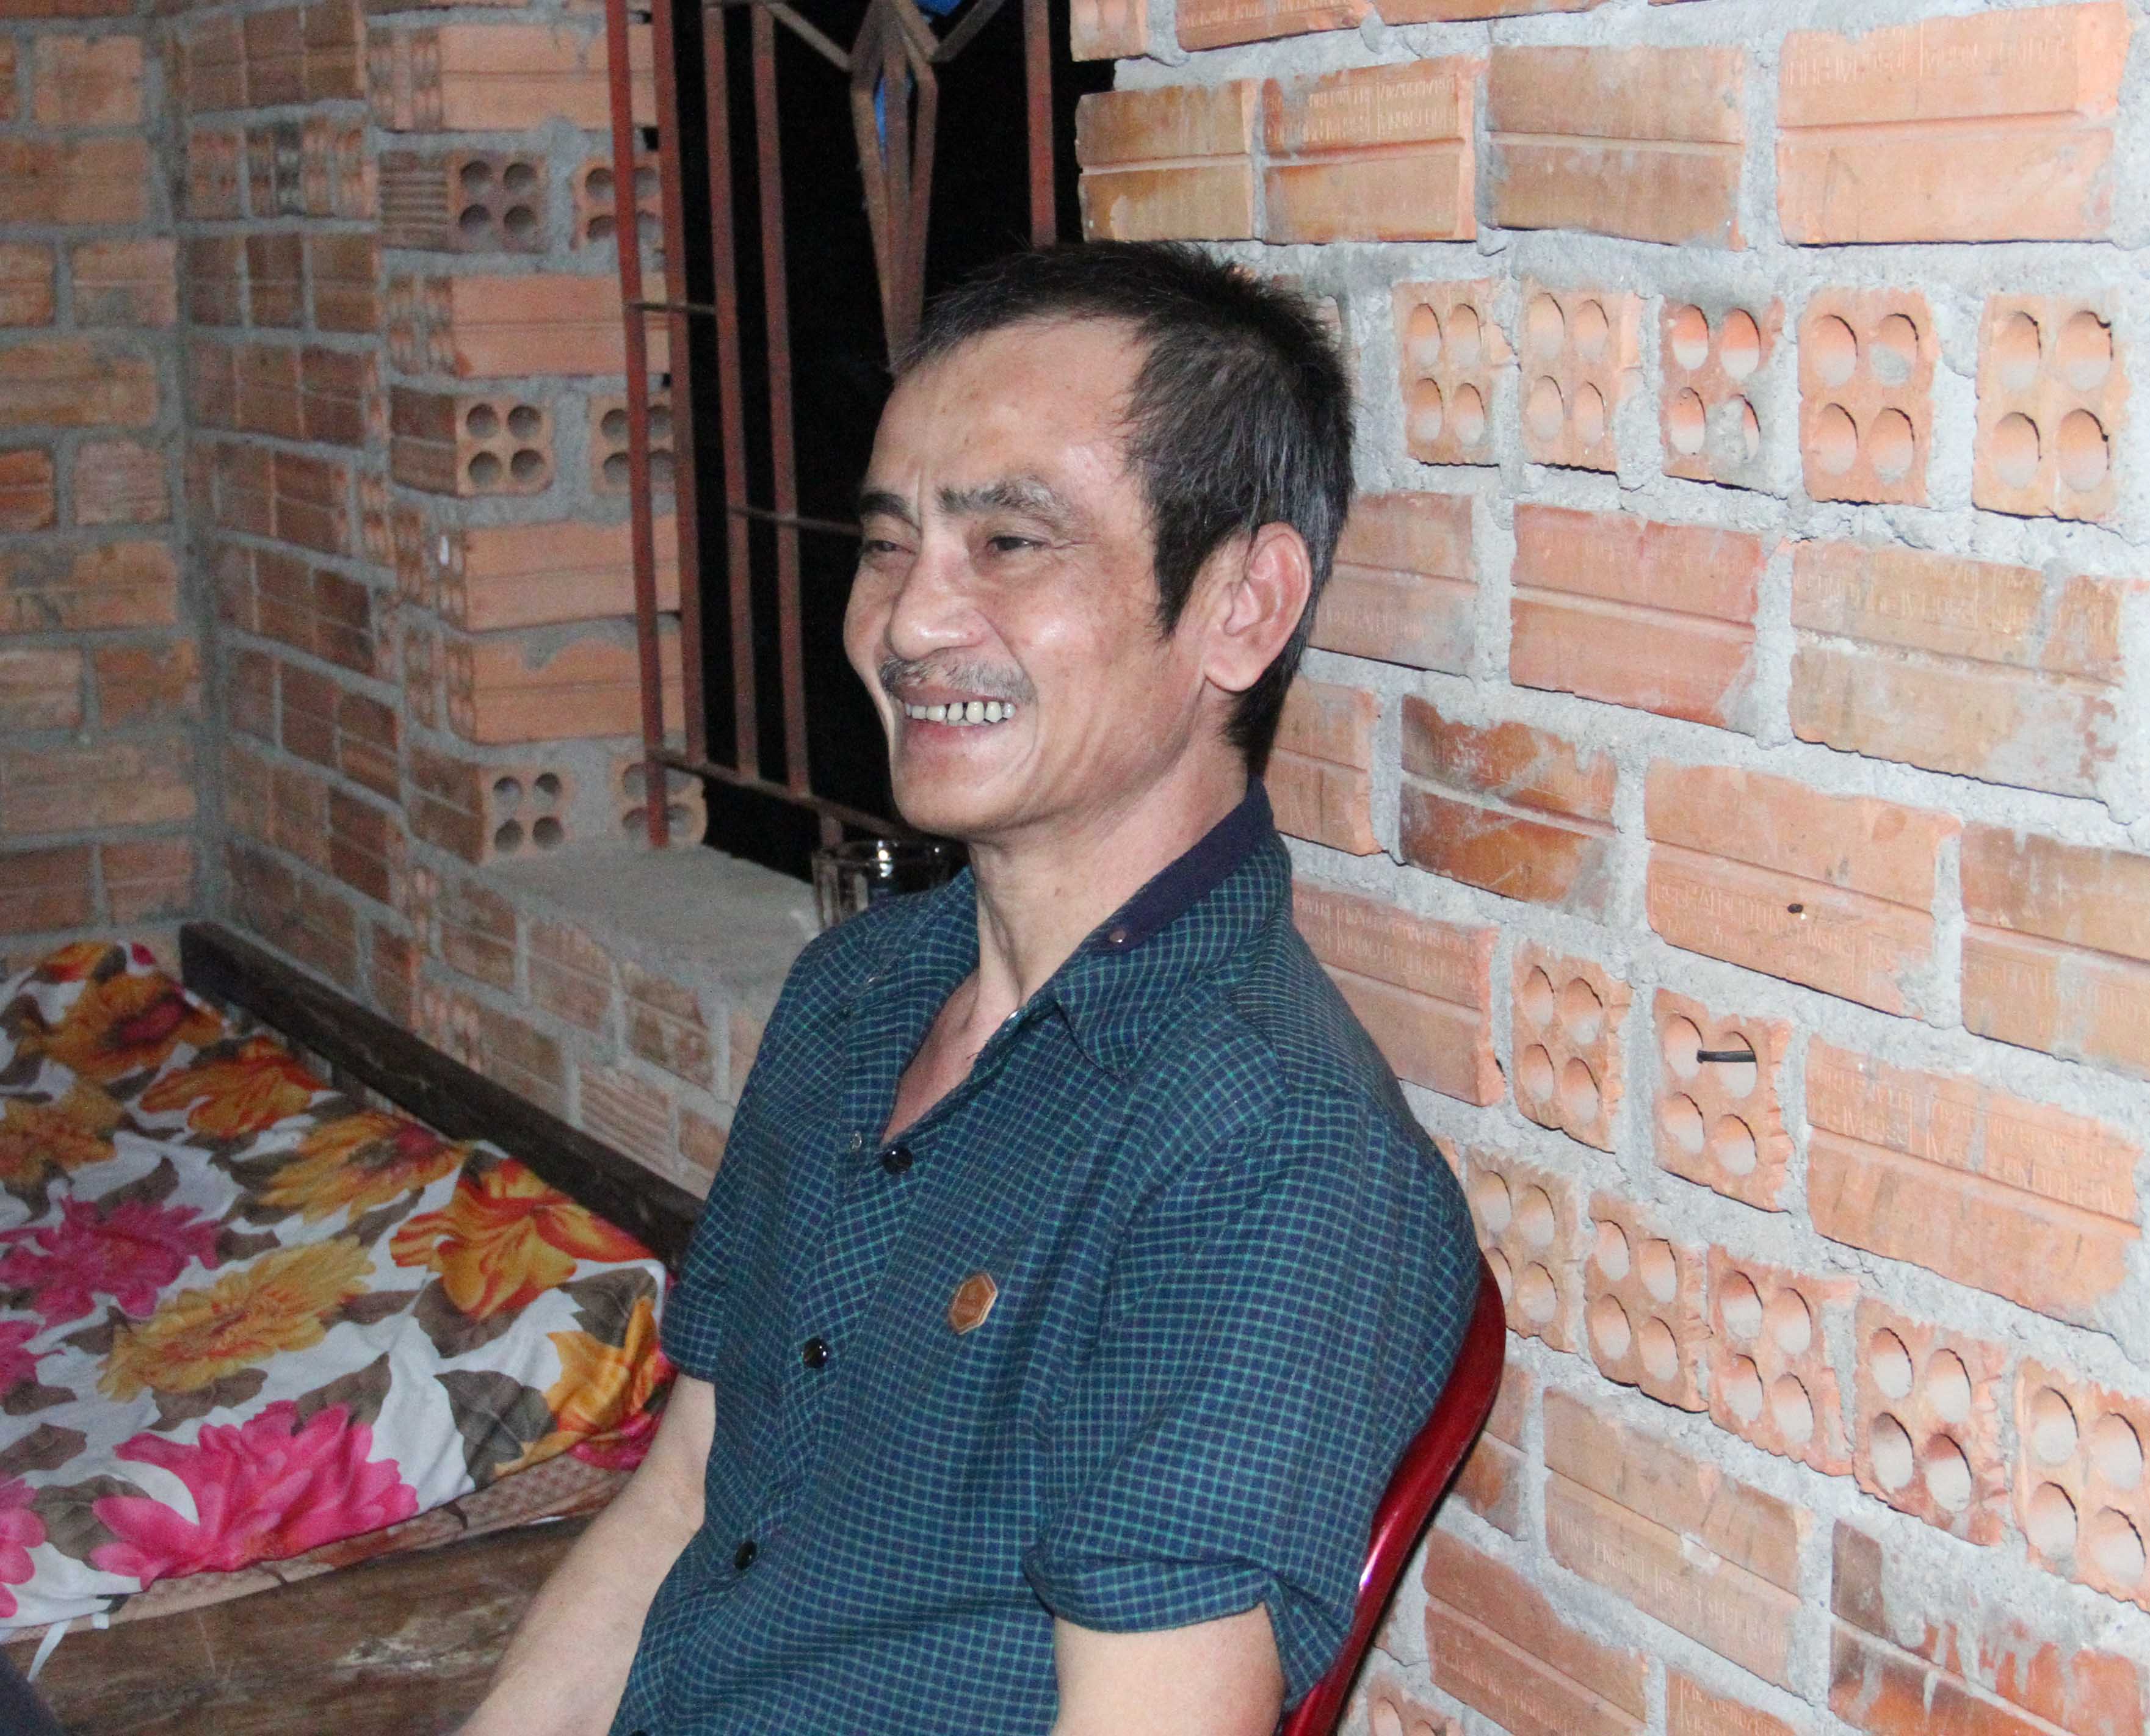 Với 2 lần bị kết án giết người, ông Huỳnh Văn Nén đã phải ngồi tù oan suốt 17 năm 5 tháng